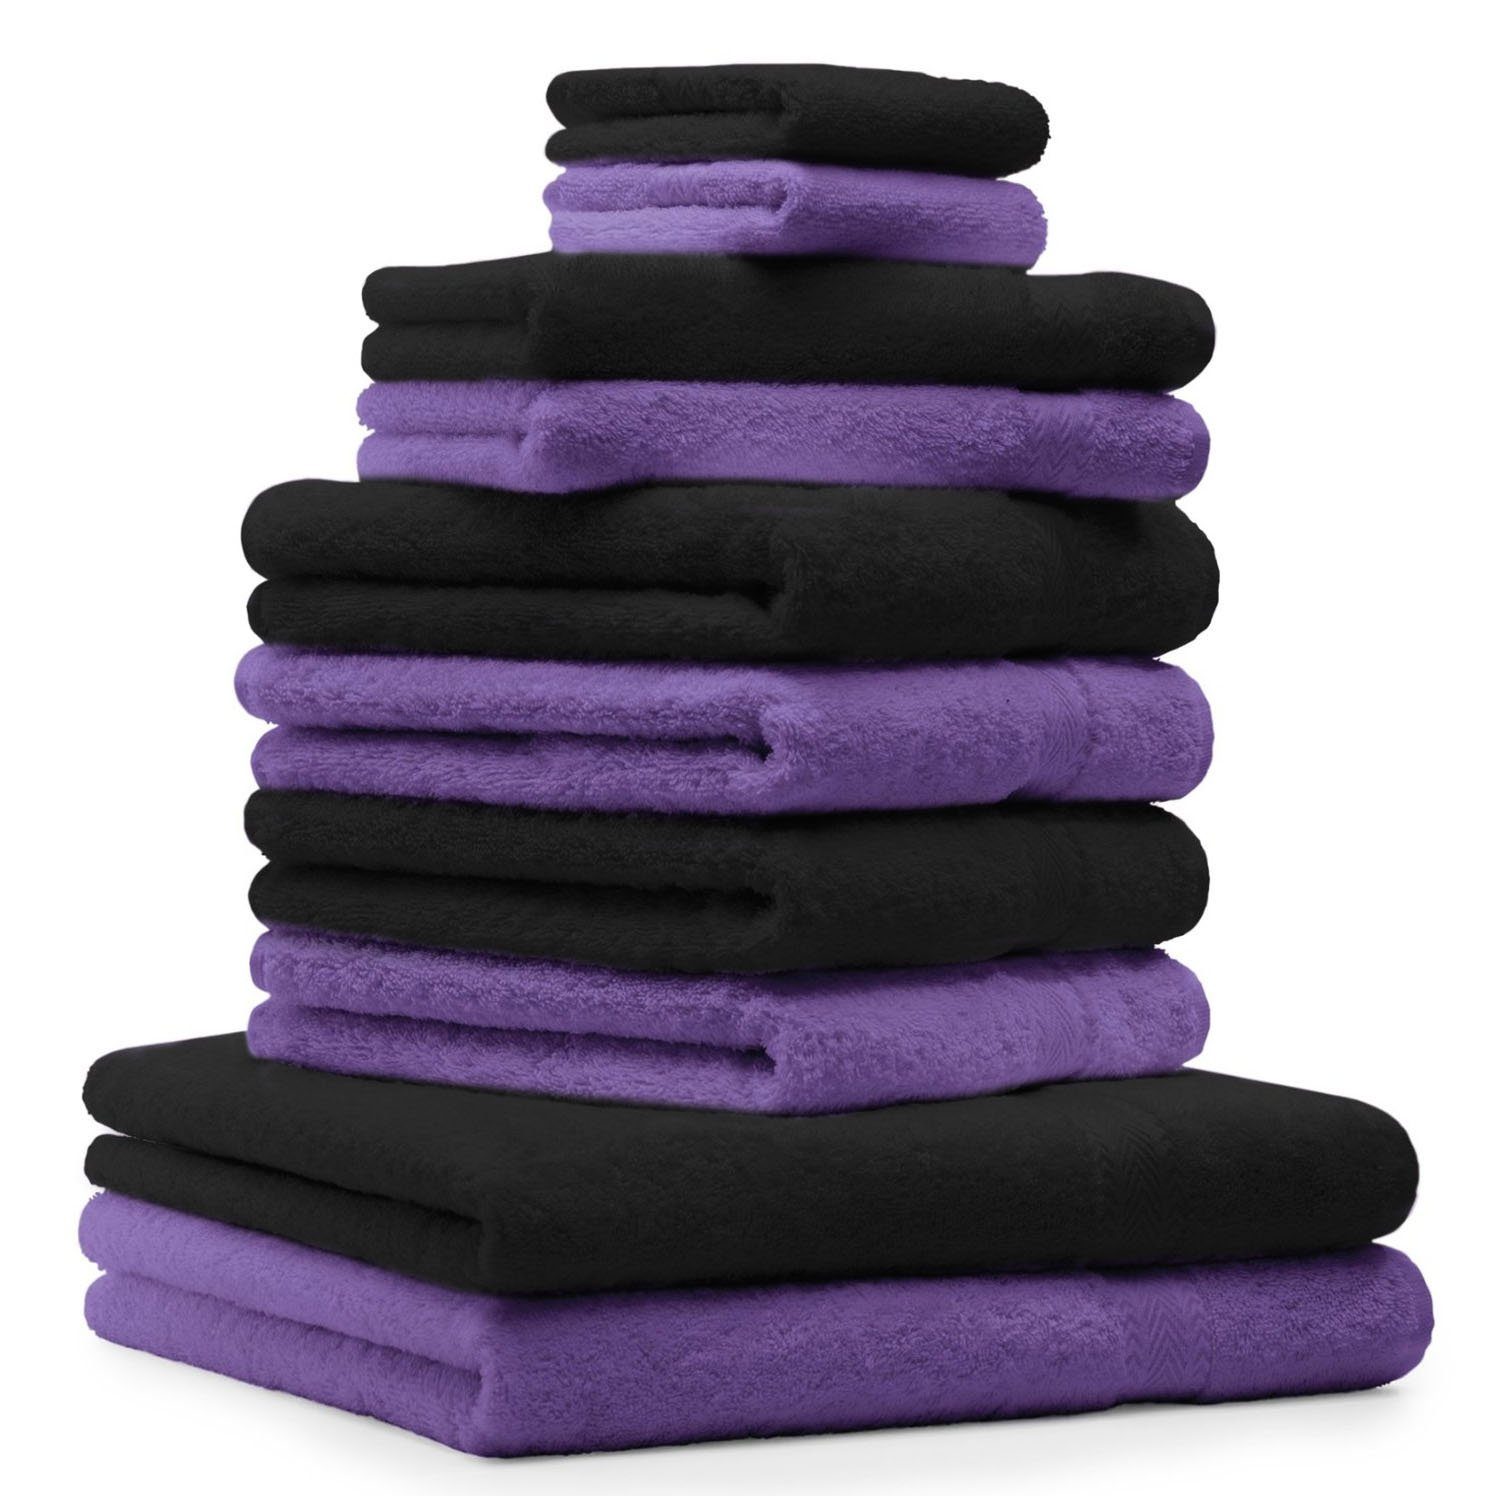 Betz Handtuch Set 10-TLG. Handtuch-Set Classic Farbe lila und schwarz, 100% Baumwolle